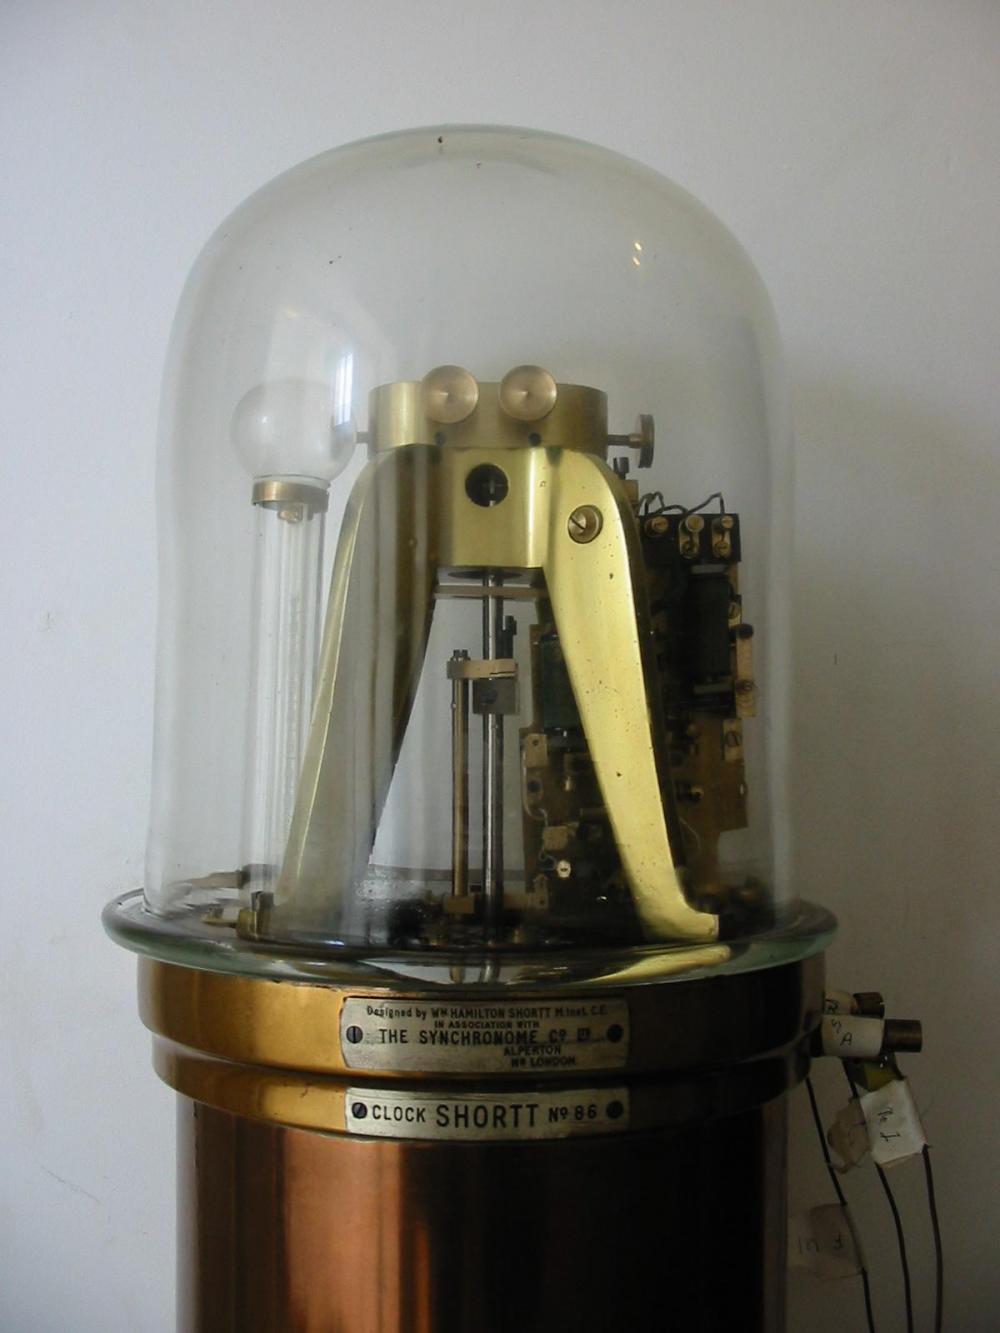 Shortt Chronometer, Dunsink Observatory (©